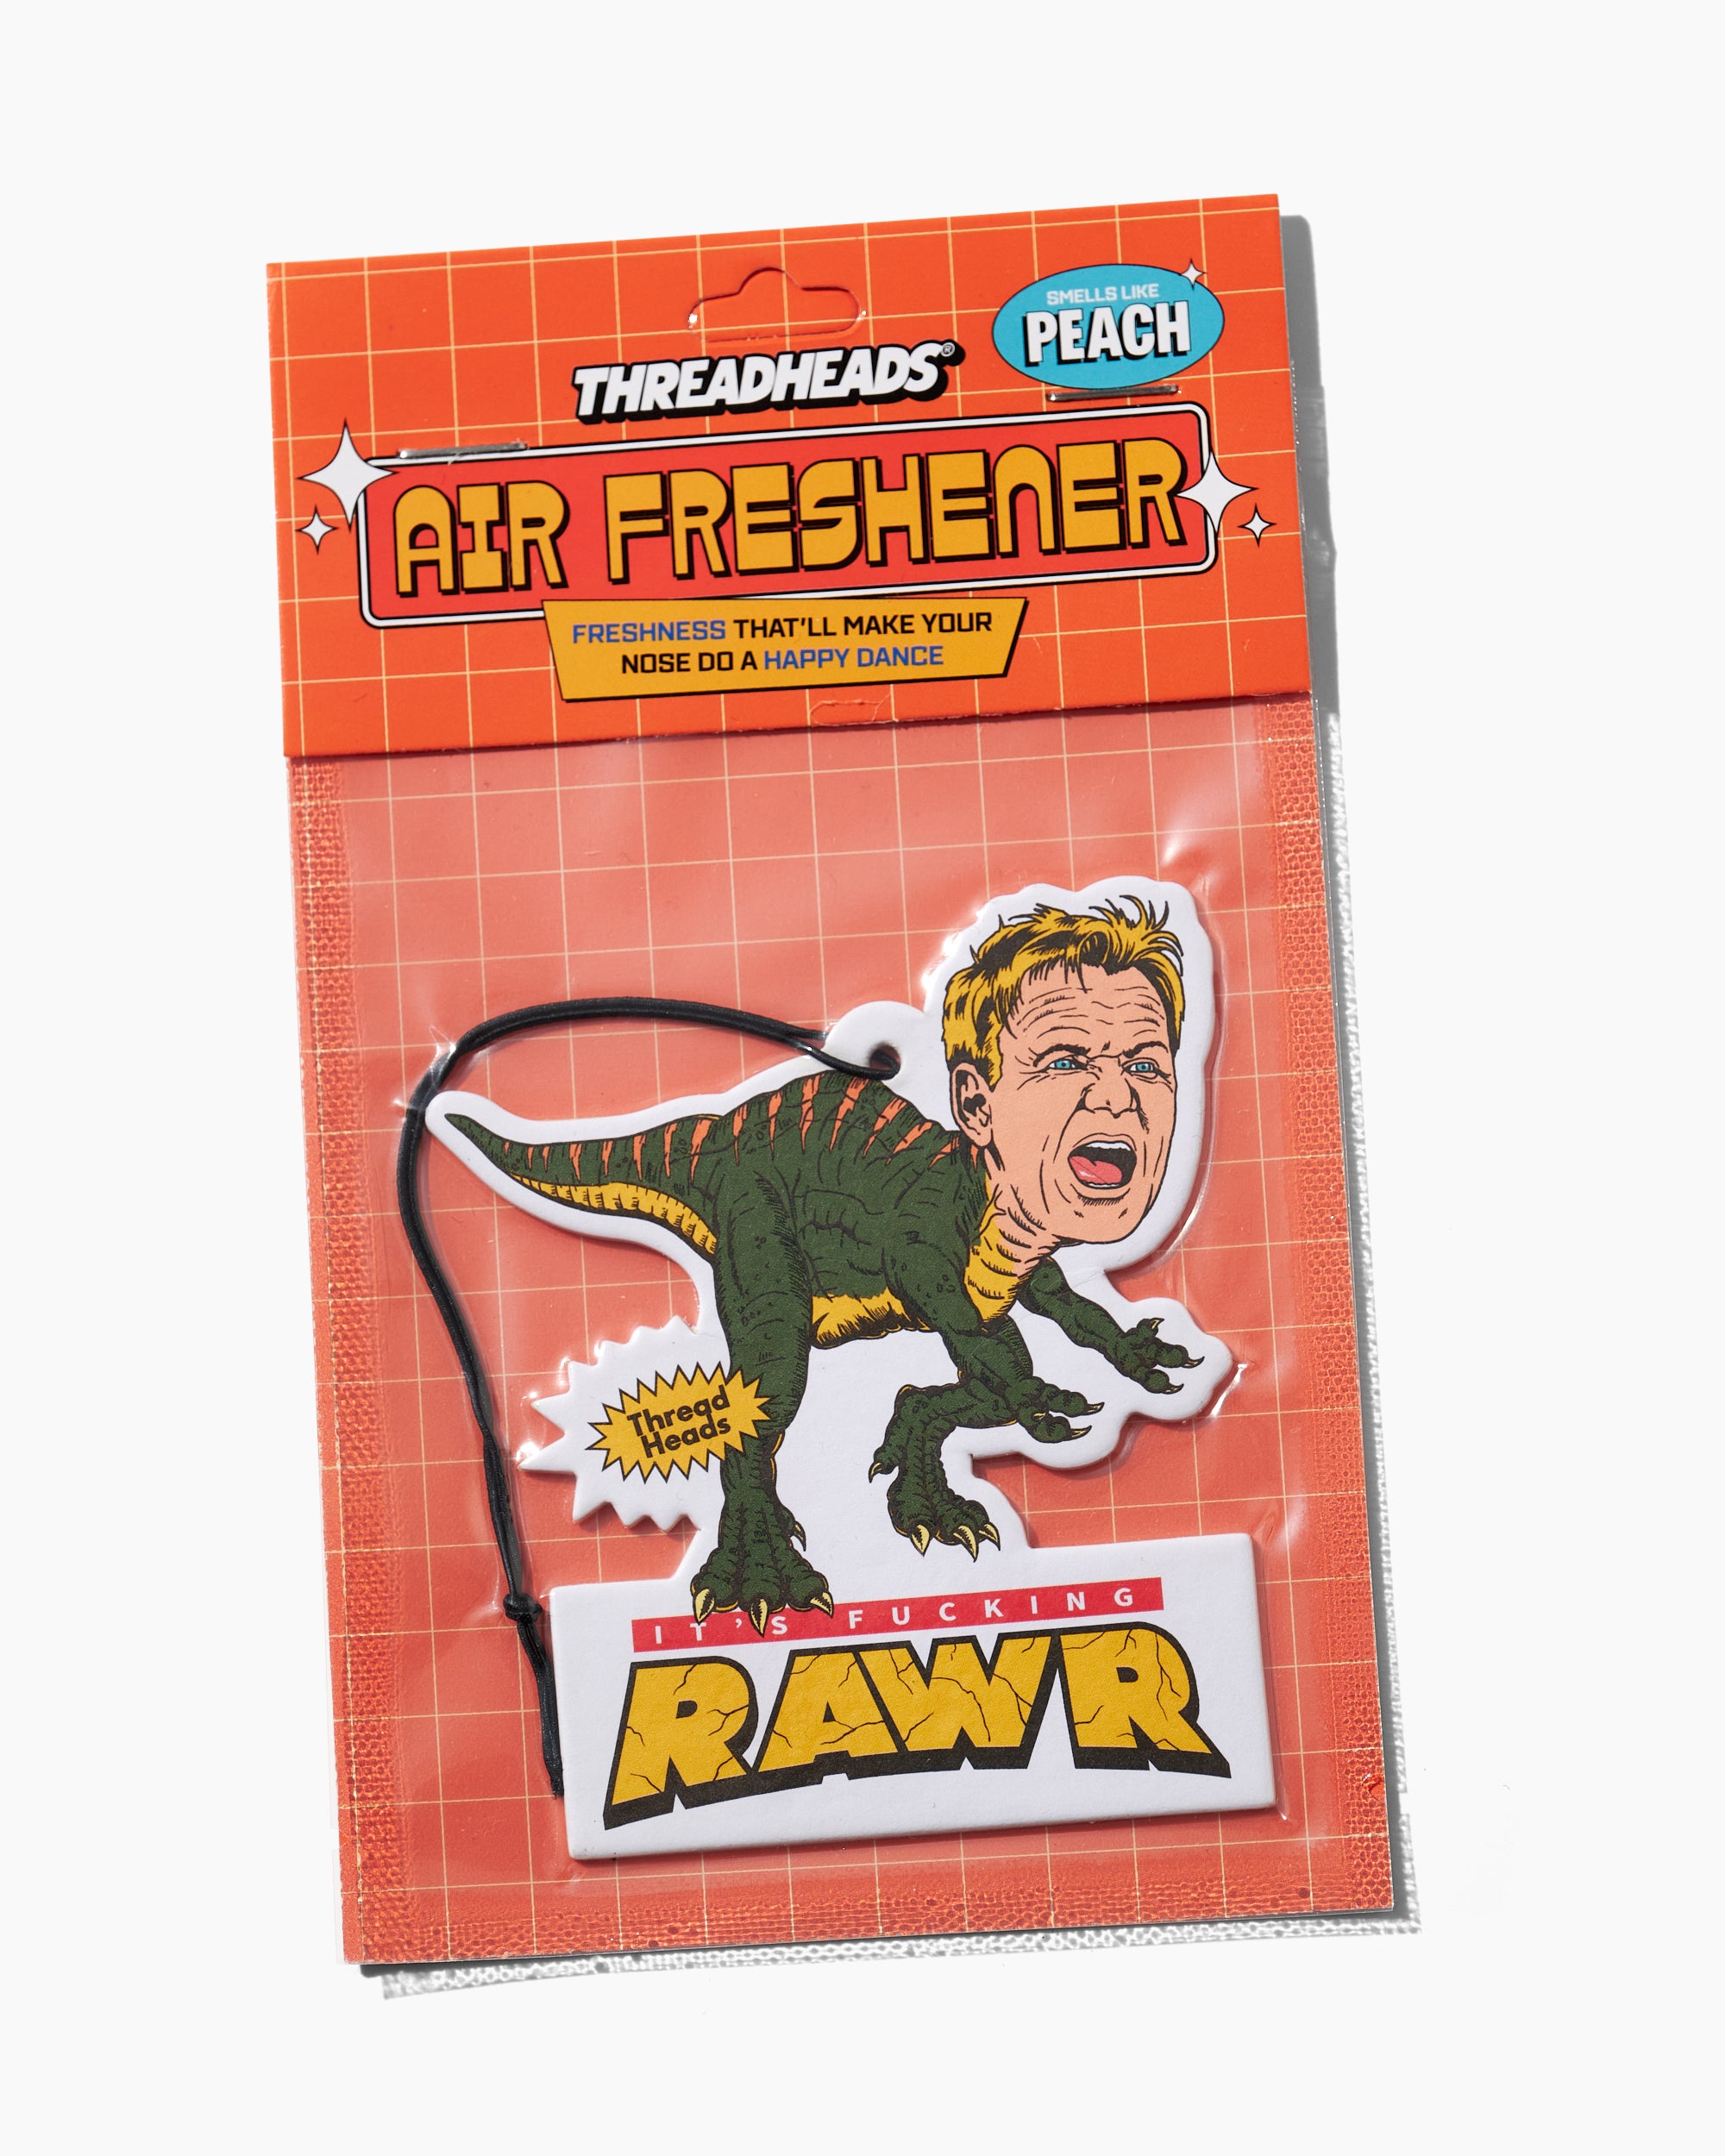 It's Rawr Air Freshener